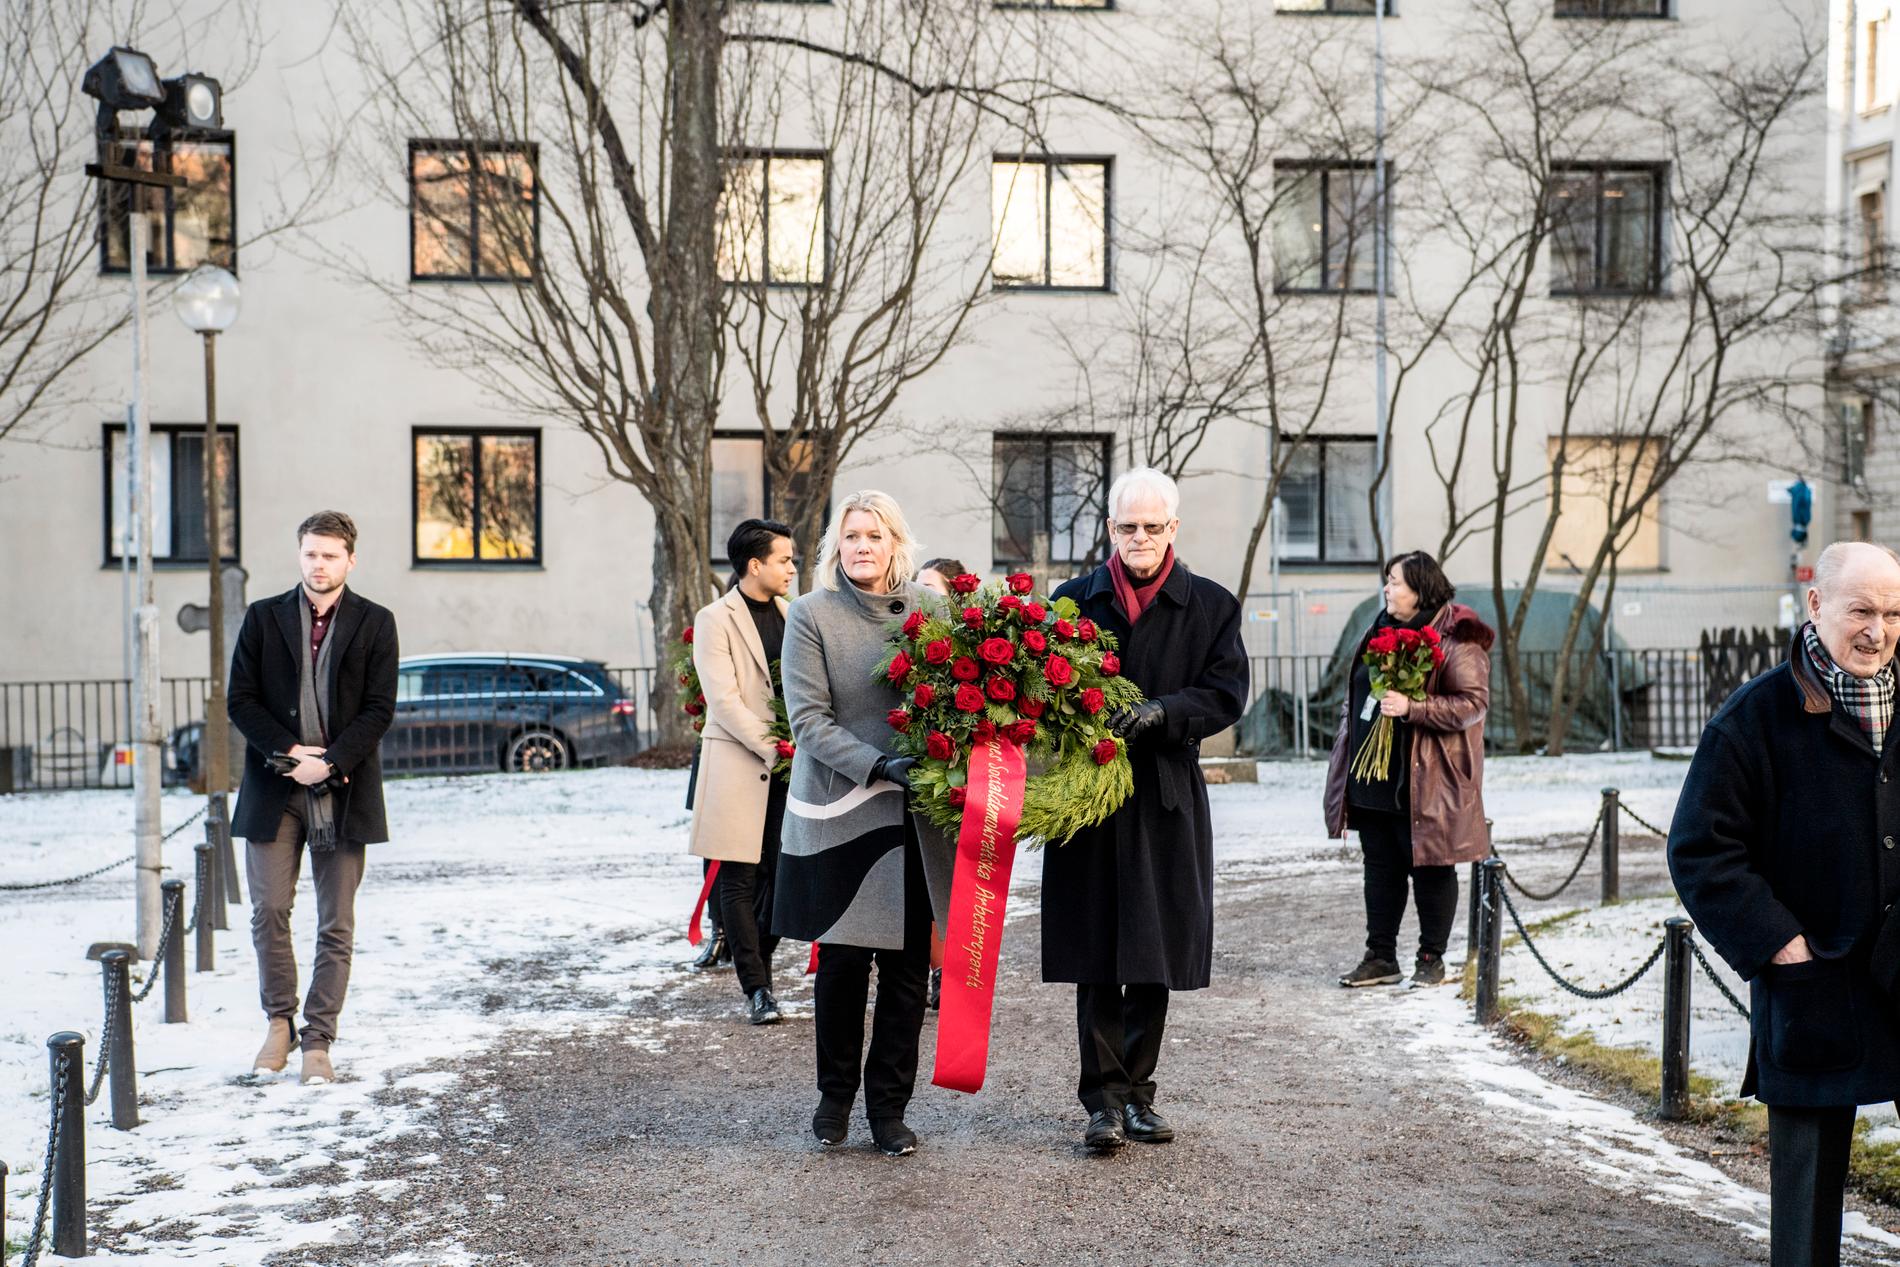 Ingvar Carlsson la en krans med rosor vid Olof Palmes grav.